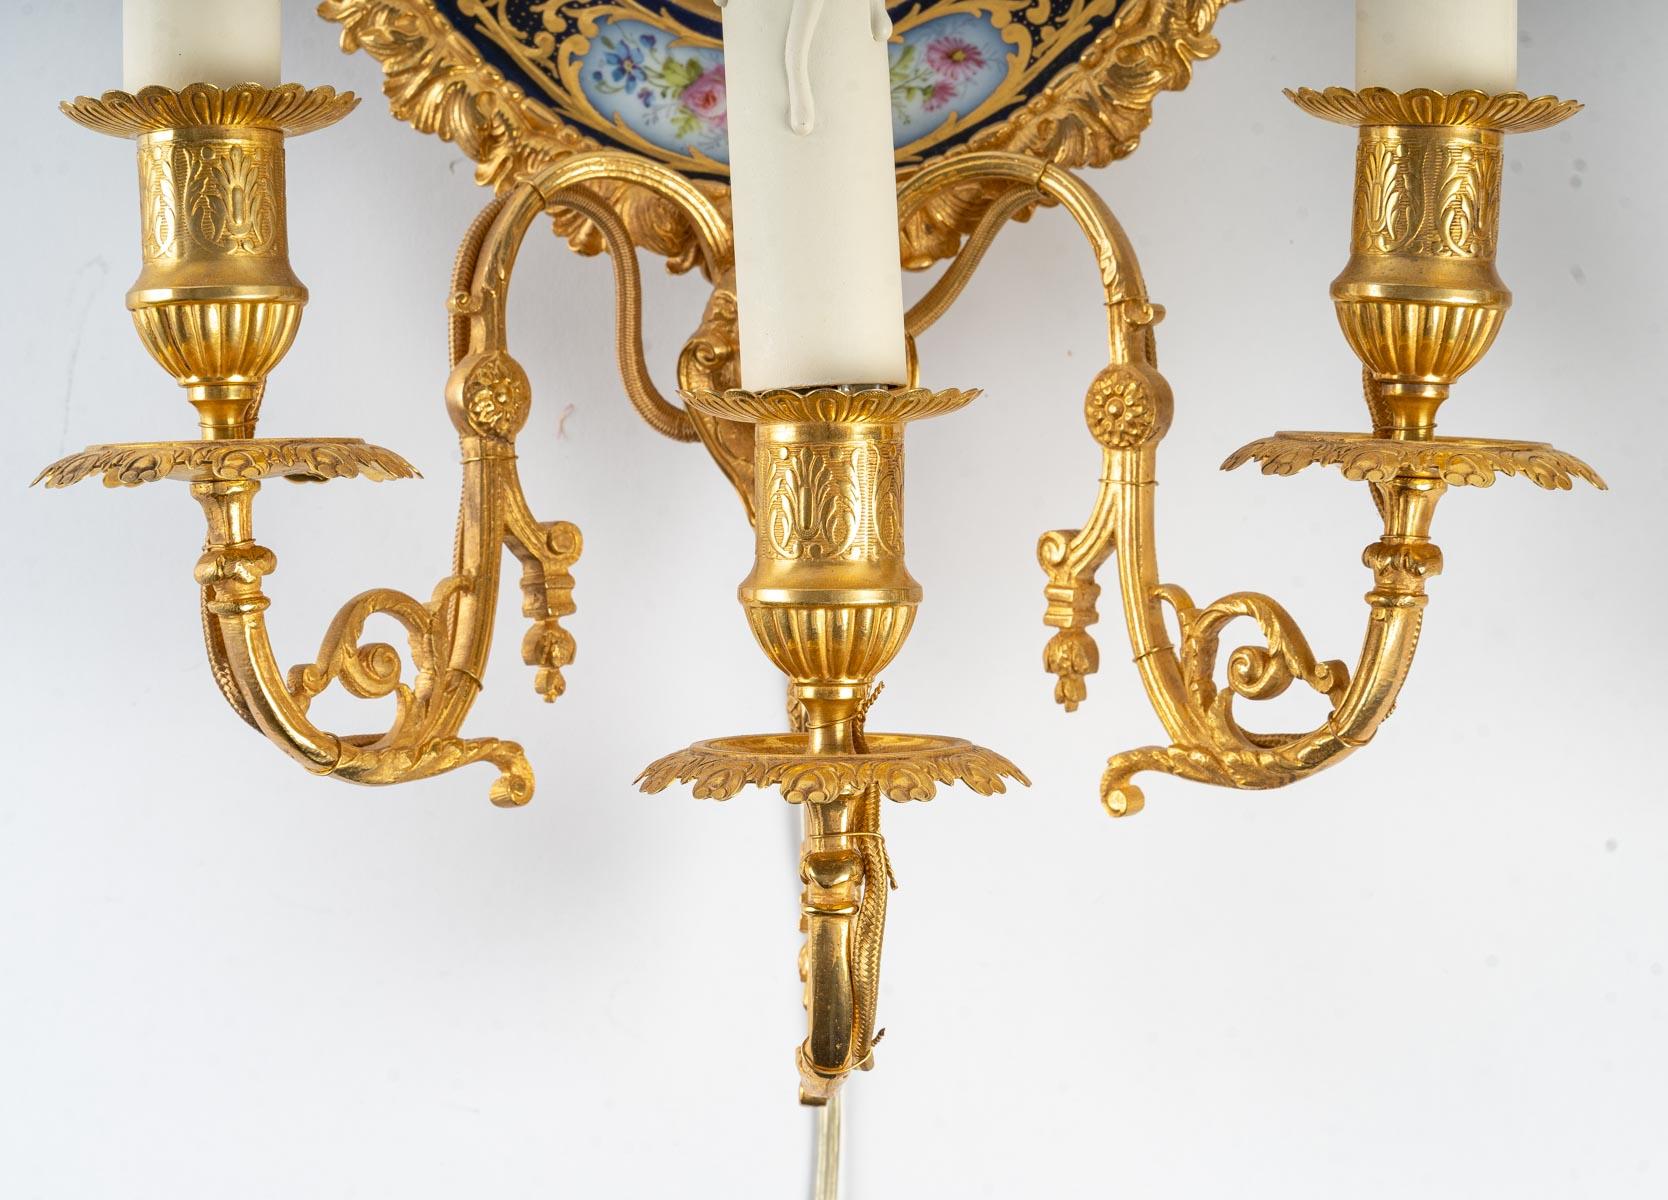 A pair of gilt bronze and Sèvres porcelain sconces, Napoleon III period, 19th century.
Measures: H: 49 cm, W: 28 cm, D: 14 cm.